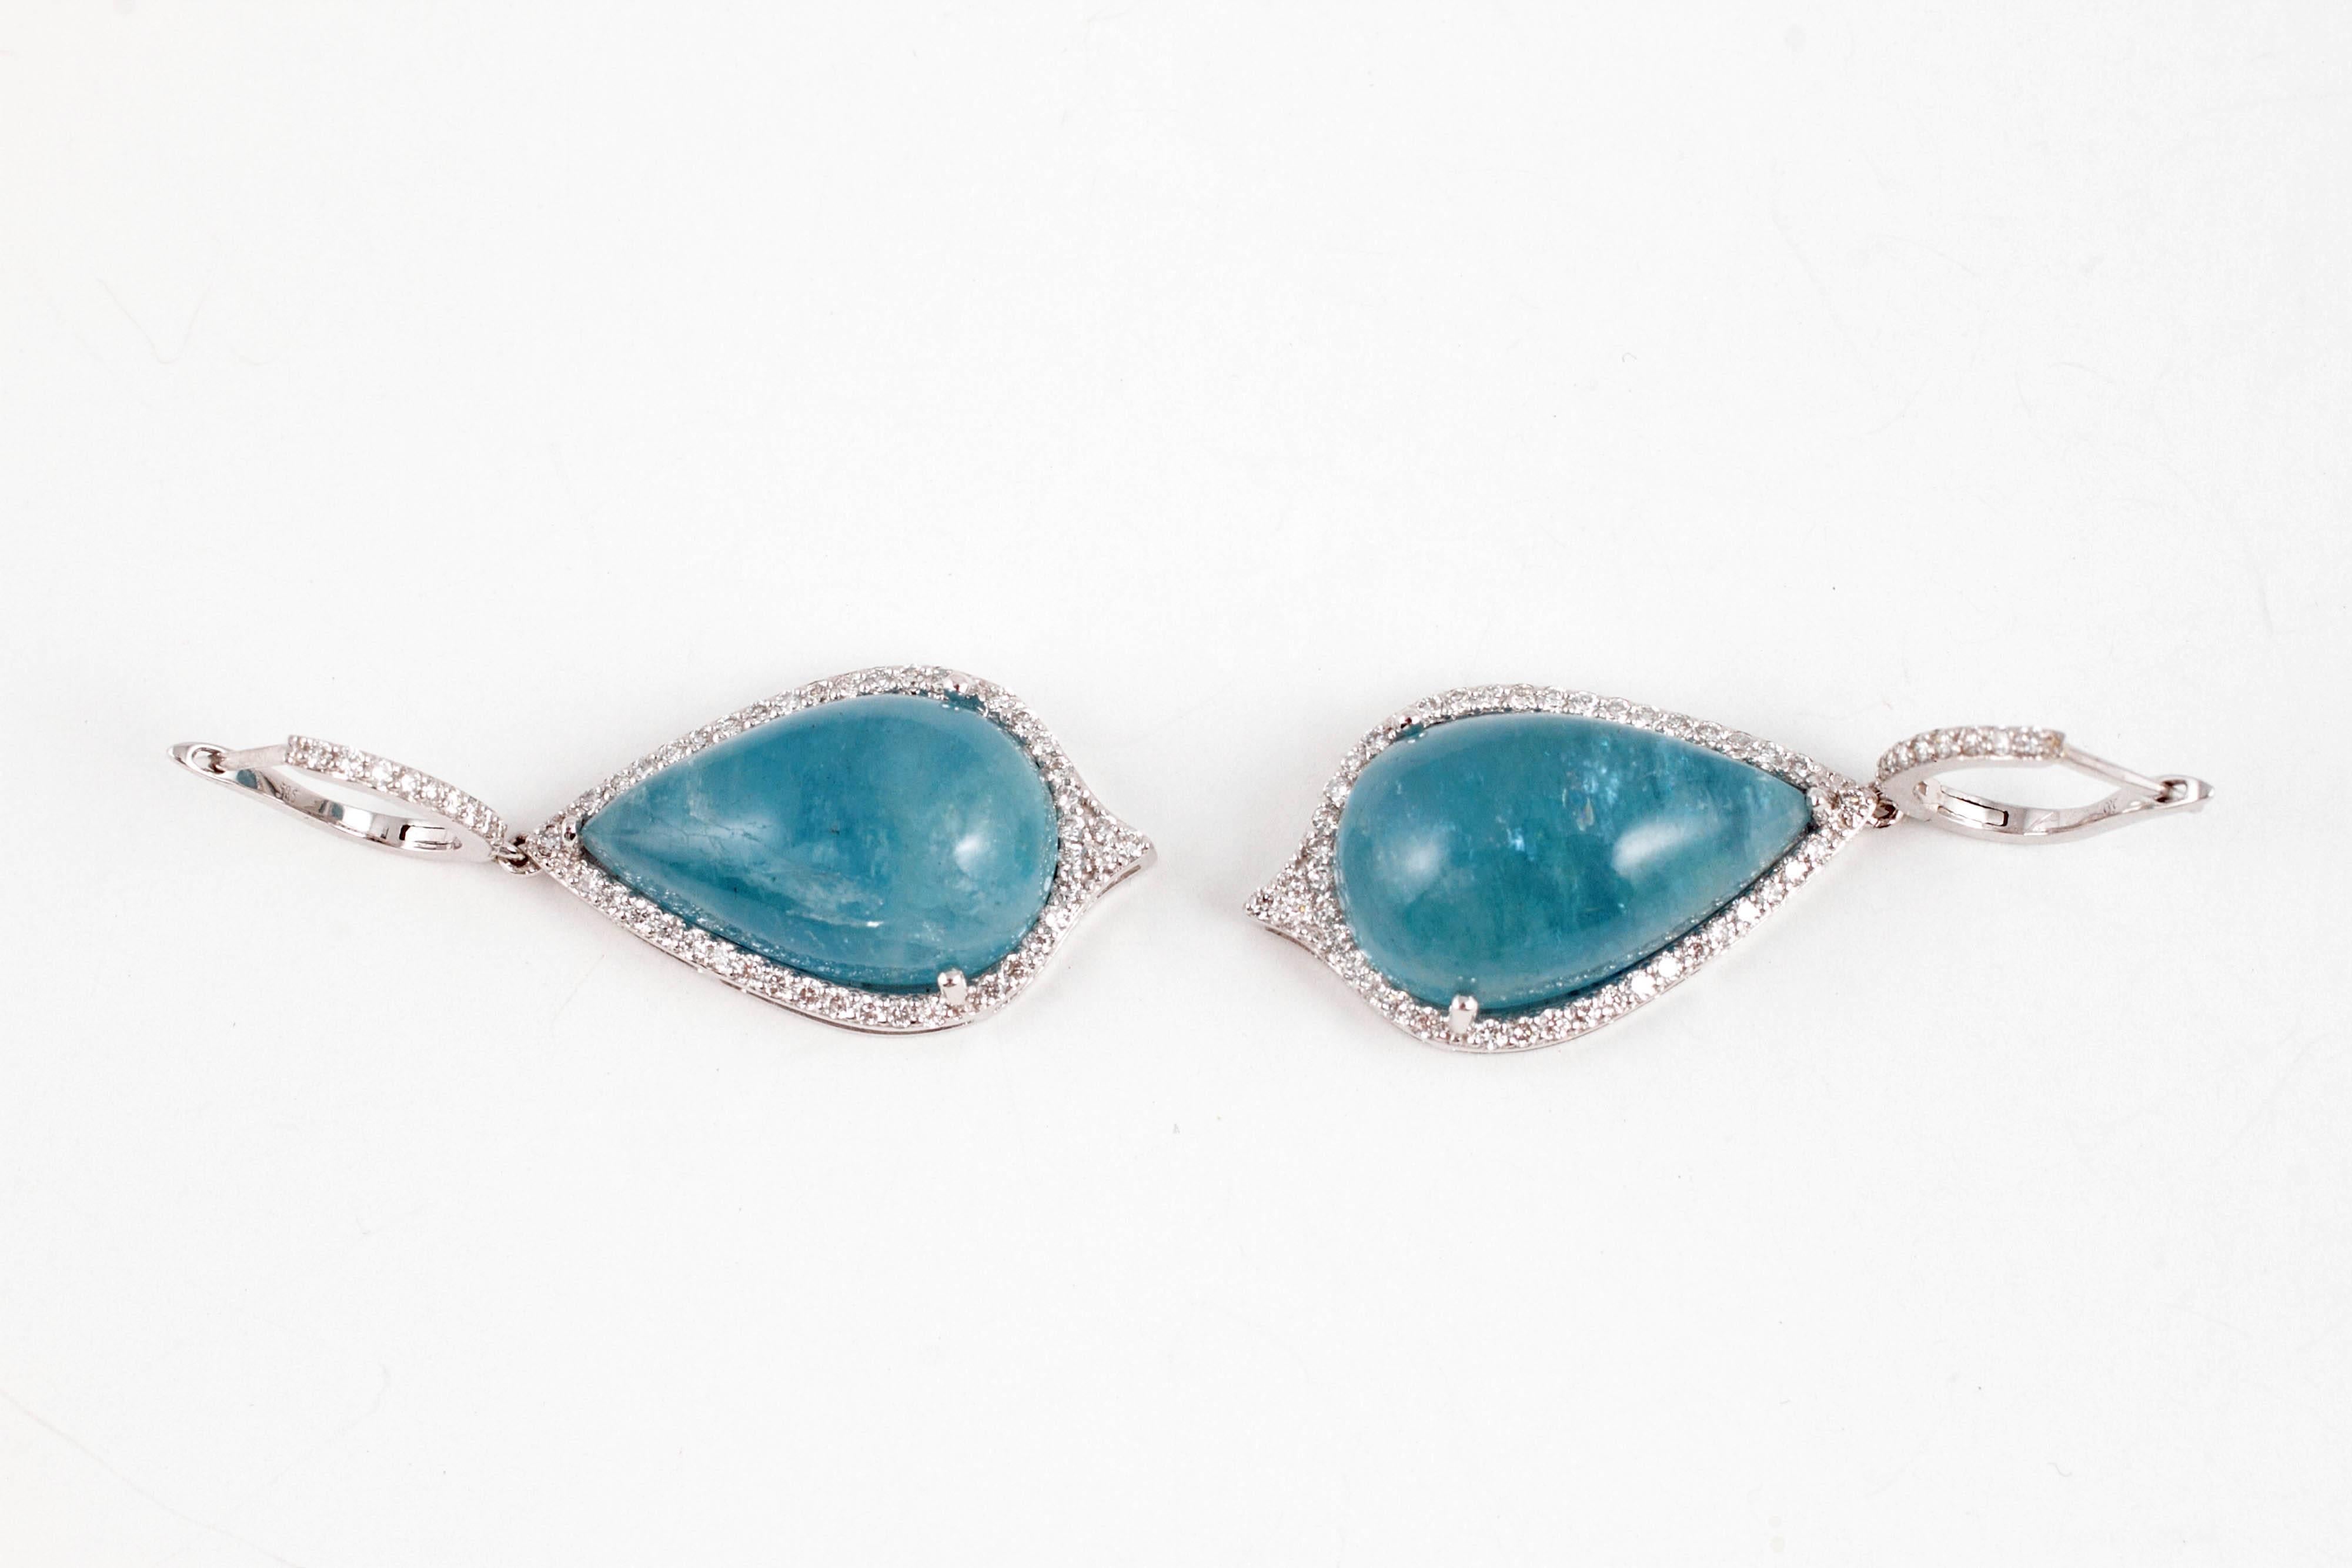 Cabochon-Cut 30.00 Carat Aquamarine Diamond Dangle Earrings 2